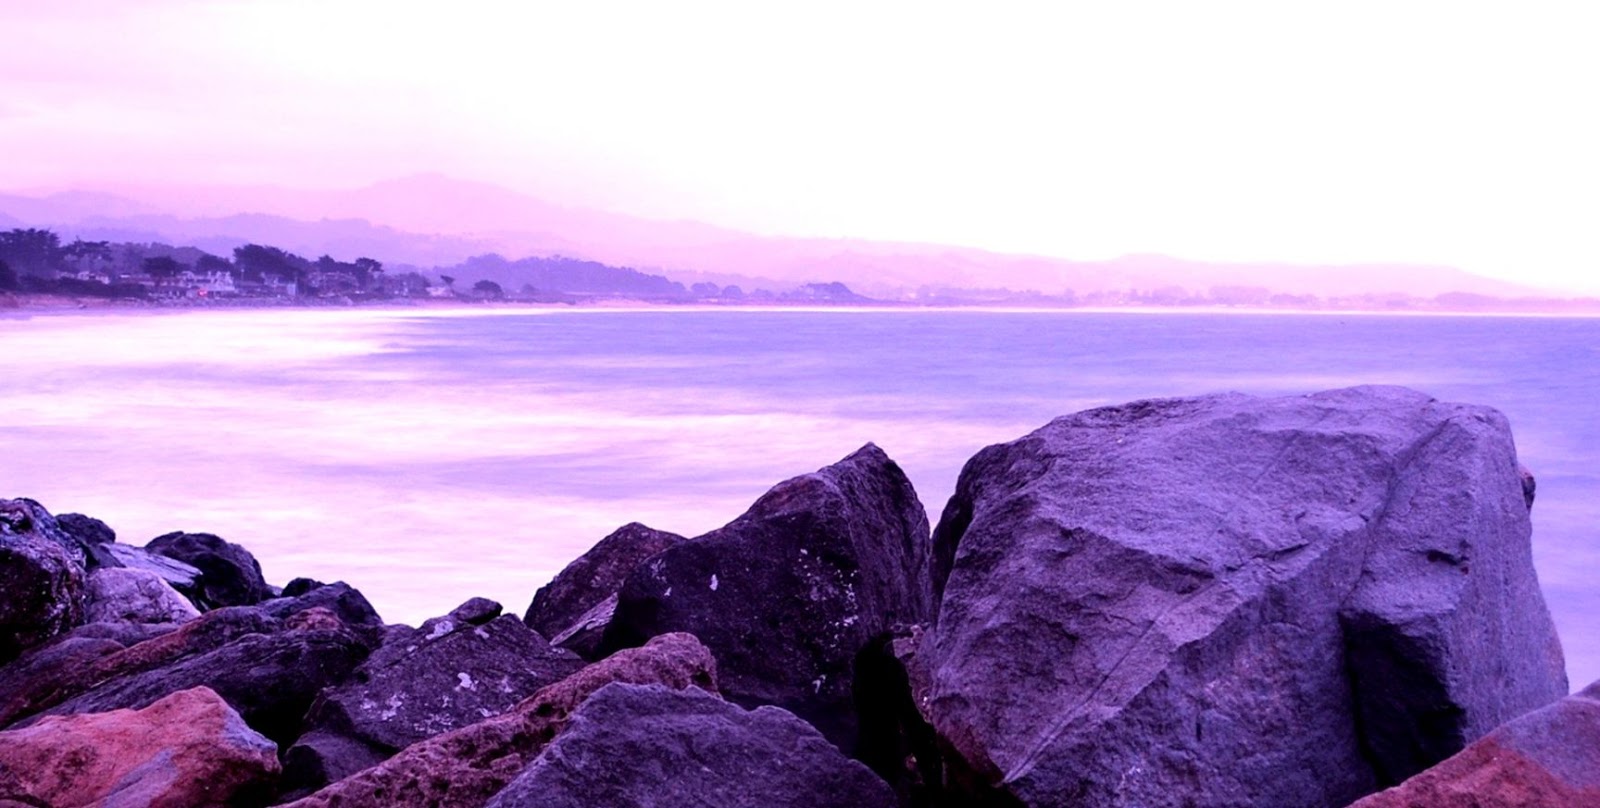 ipad fonds d'écran hd 1080p,violet,violet,ciel,la nature,mer